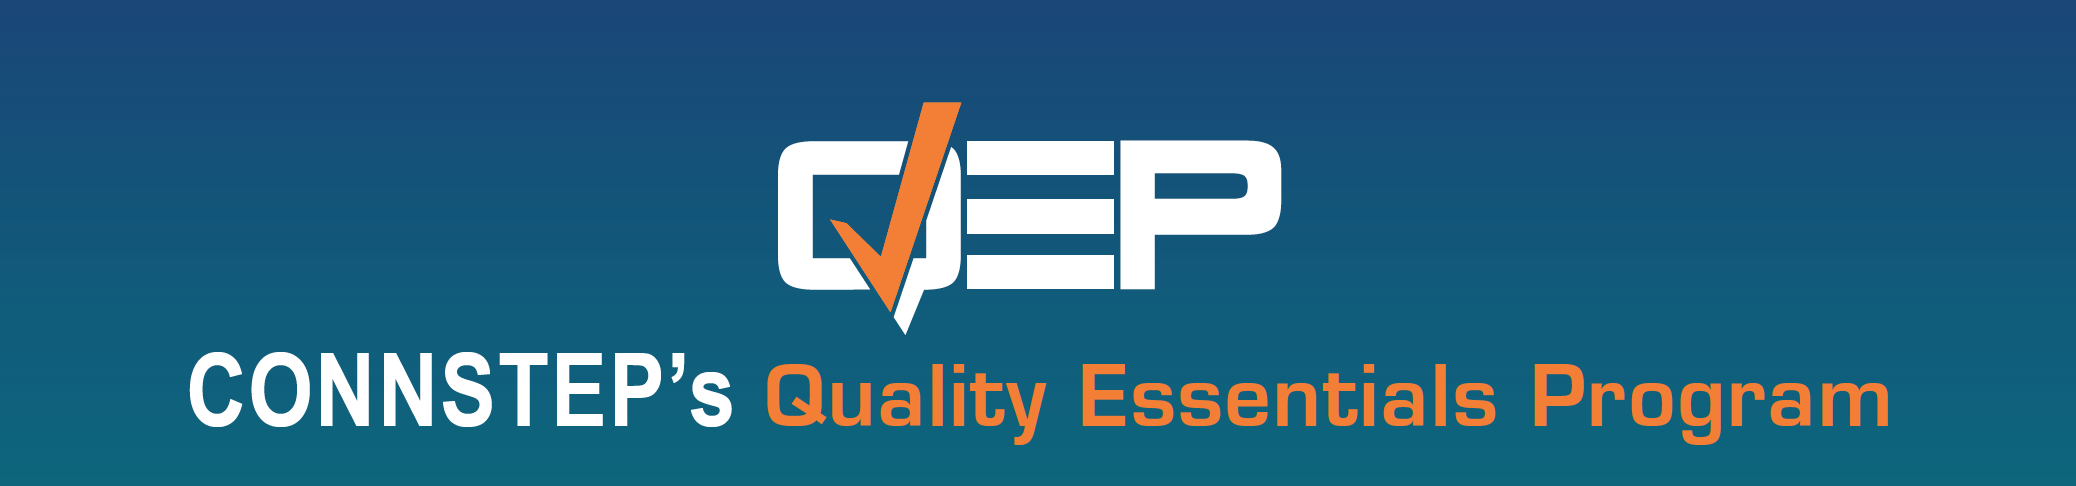 Quality Essentials Program (QEP)